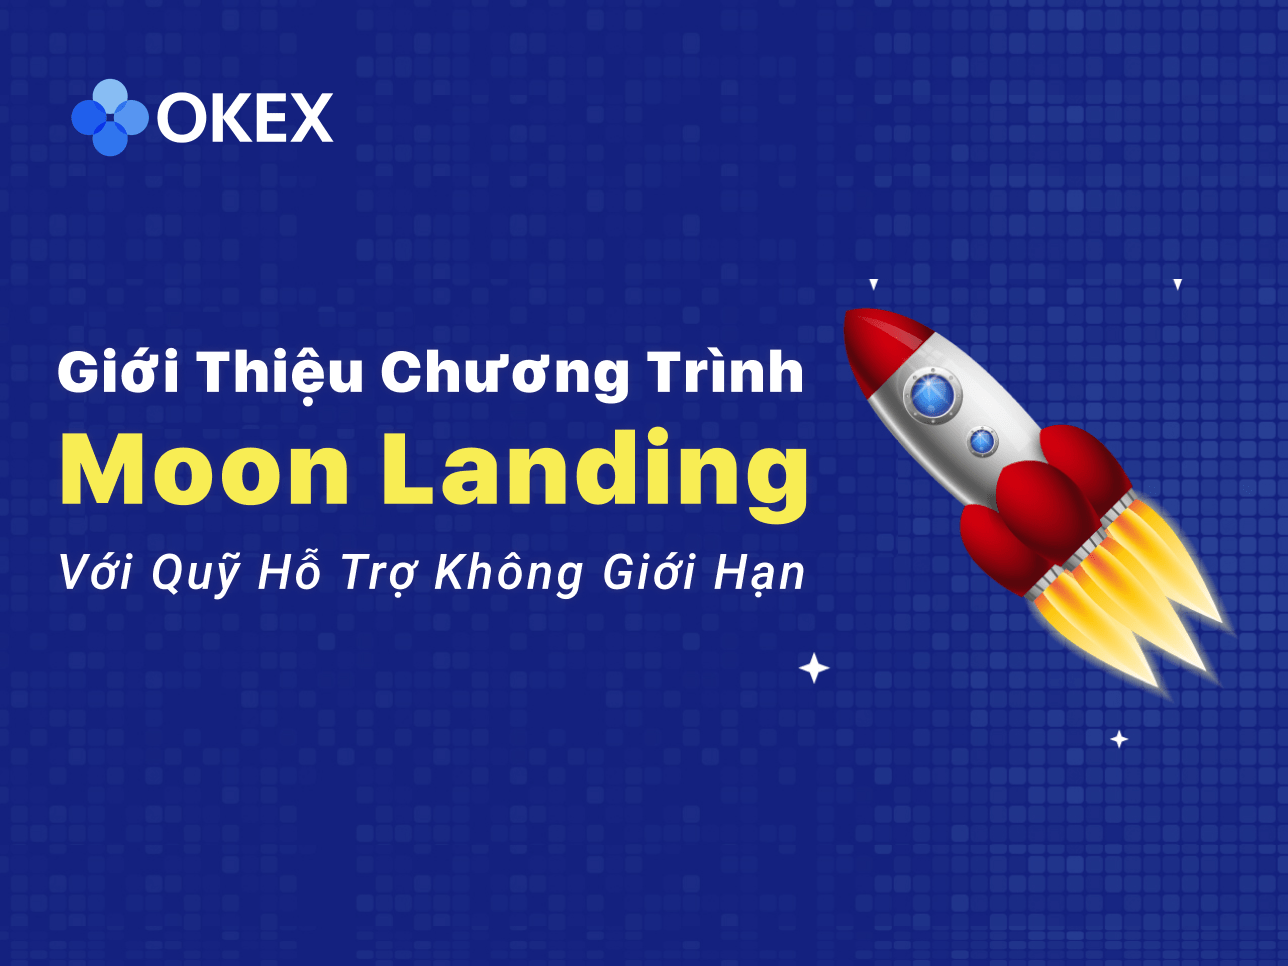 OKEx công bố "Chương trình Moon Landing" cho thị trường Châu Á 